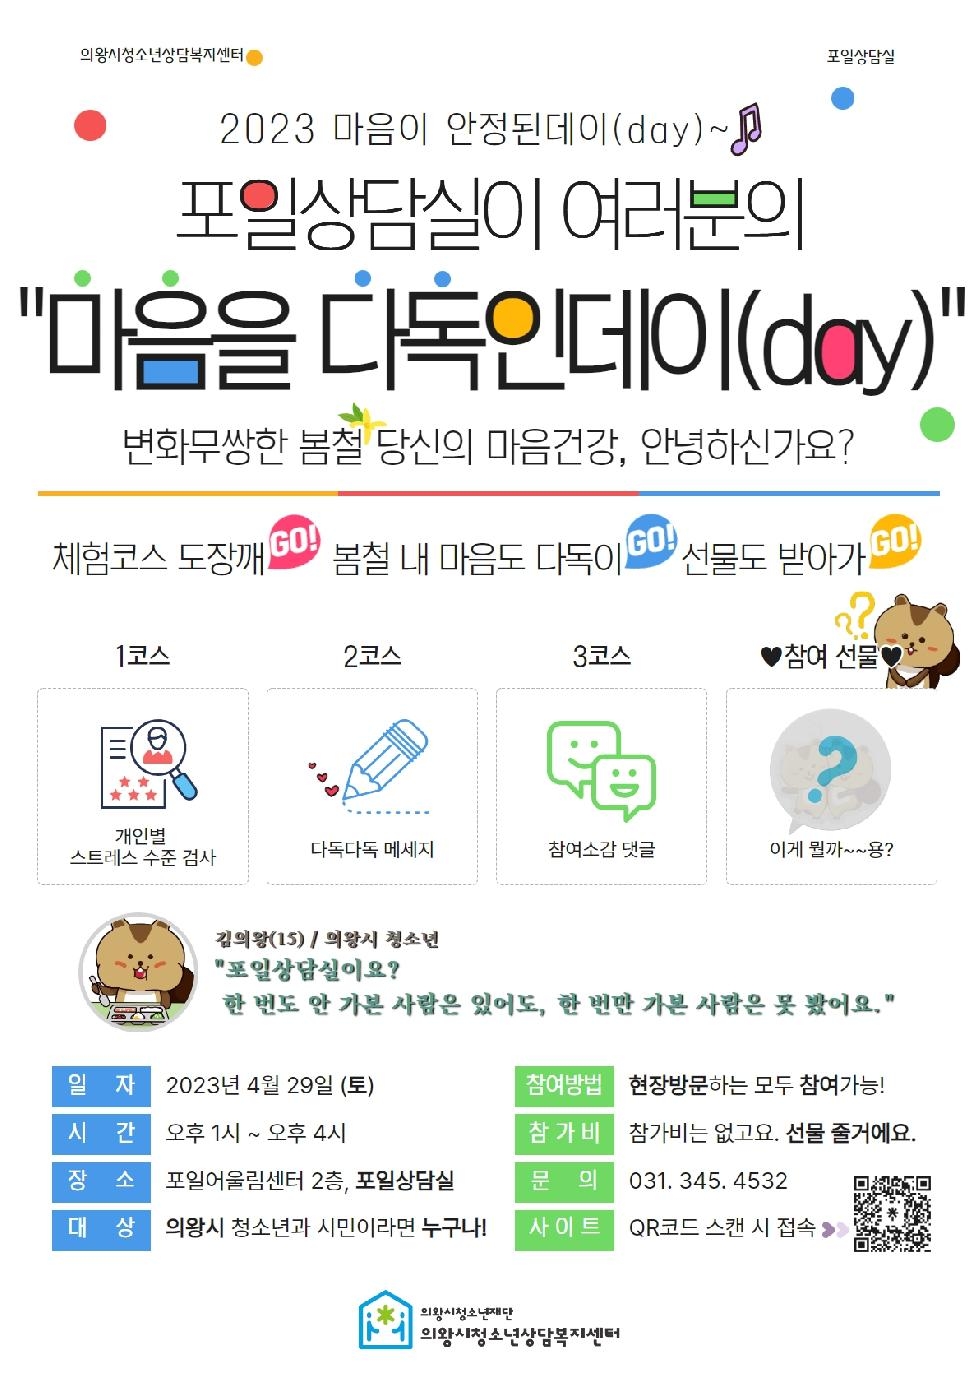 의왕시청소년상담복지센터, 마음이 안정된데이(day) 행사 개최